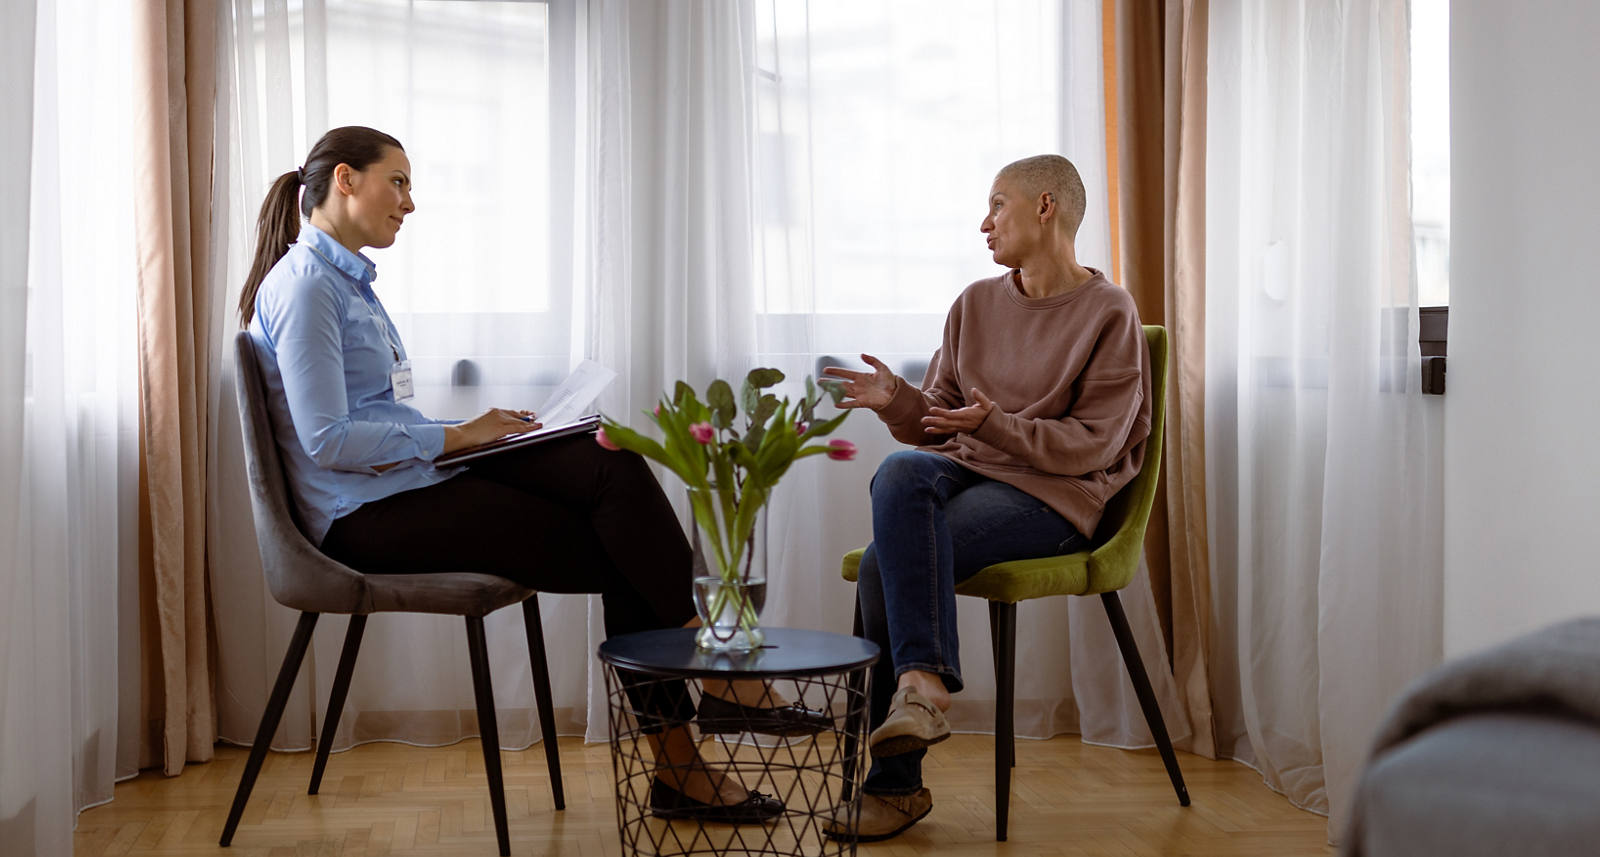 Deux femmes sont assises dans une salle de consultation. La patiente atteinte d’un cancer reçoit un soutien psychologique.